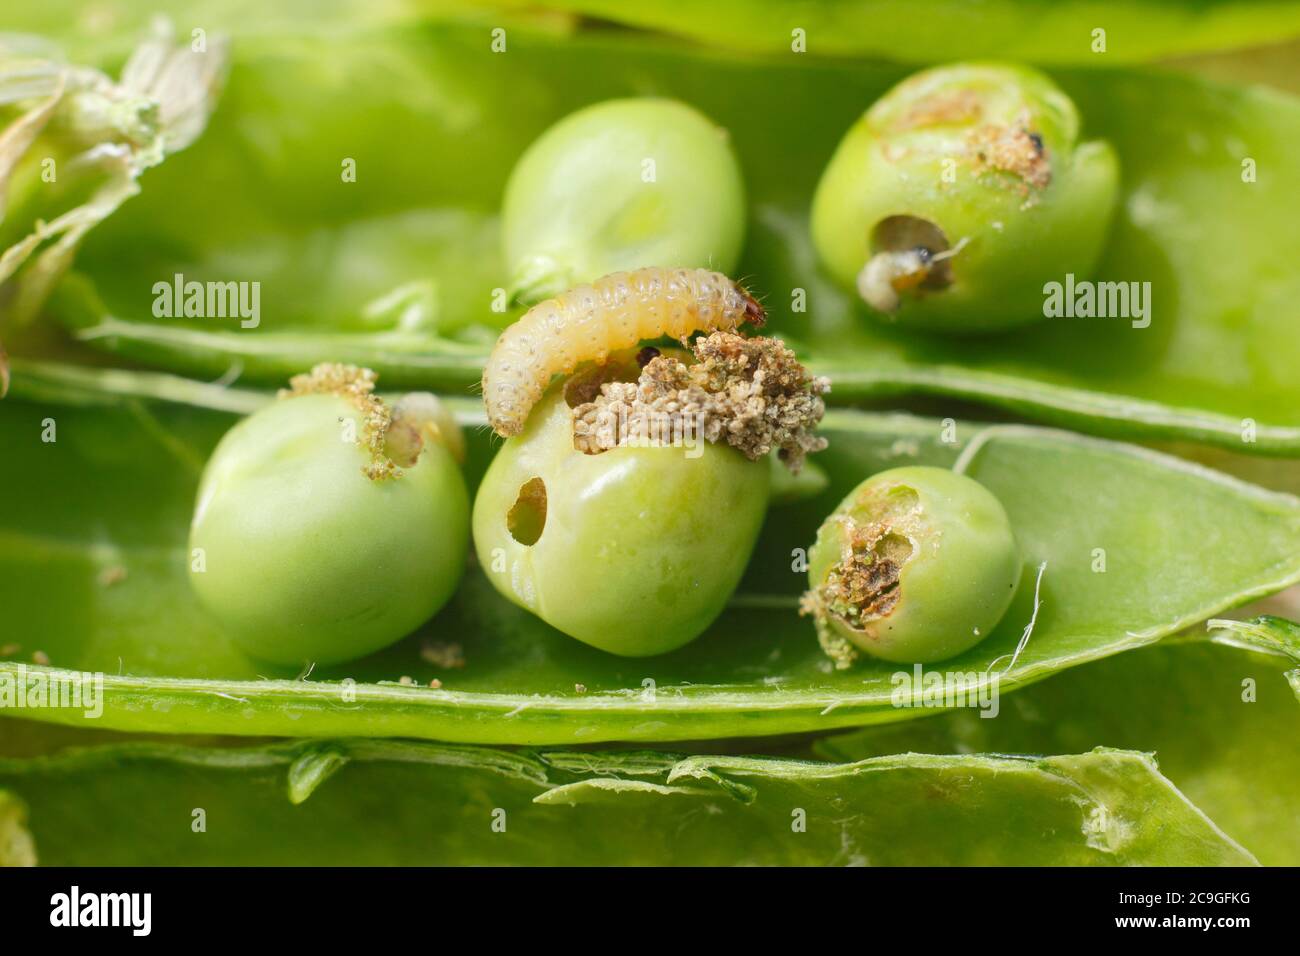 Cydia nigricana larves et frass. Larves de la papule de pois dans la gousse avec excréments et dommages visibles aux pois du jardin. ROYAUME-UNI Banque D'Images